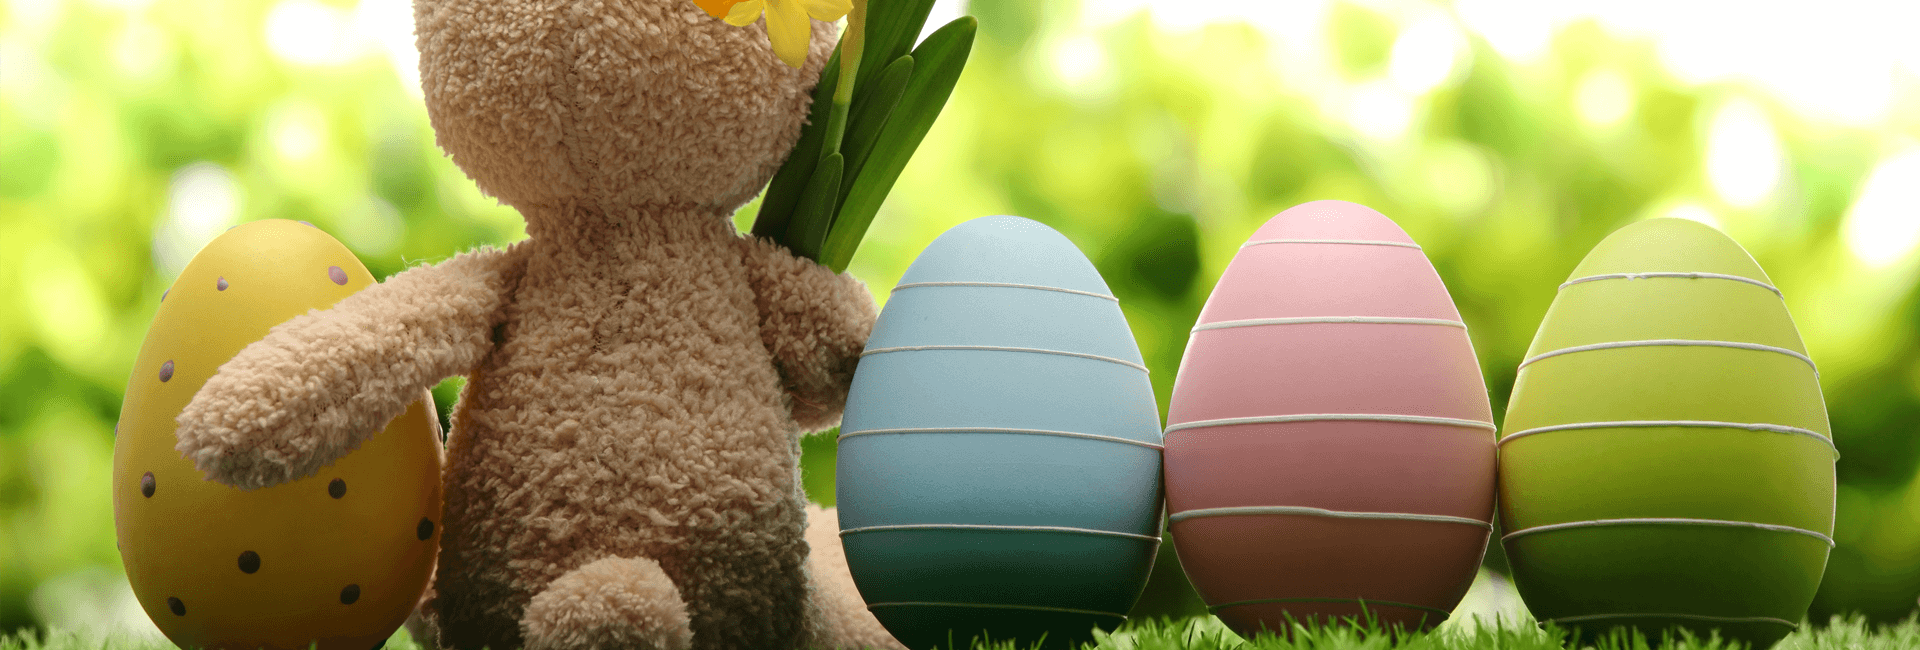 Gekleurde eieren op een rij met een speelgoed konijn ertussen - Paasbrunch arrangement - Gasterij 't Karrewiel